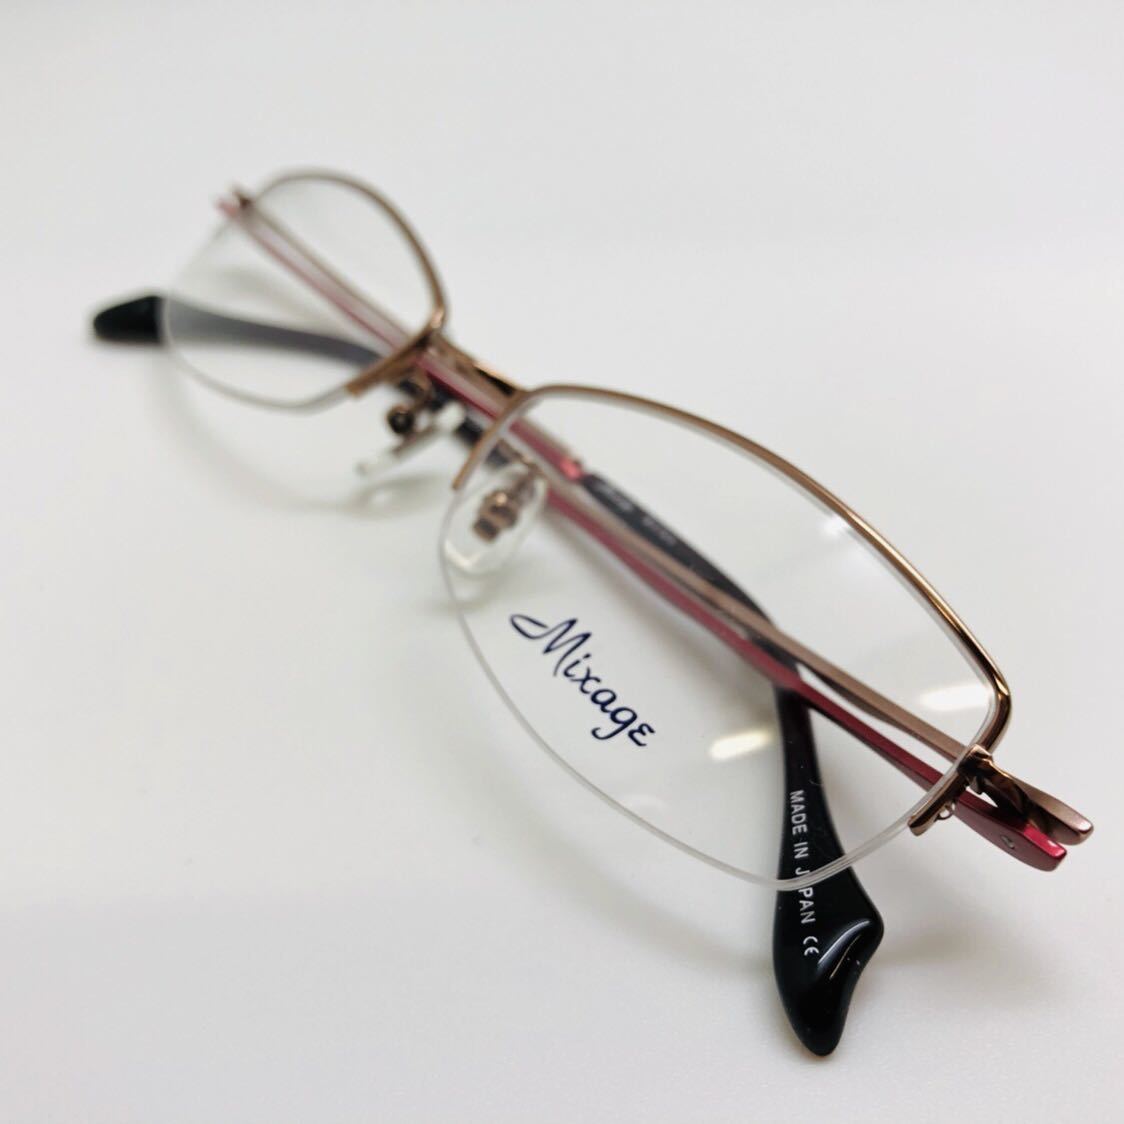 45％割引最前線の 新品 Mixage ミキサージュ 日本製 眼鏡 メガネ 綺麗 上品 オシャ かわいい チタン Titanium 金属フレーム めがね、コンタクト  ビューティー、ヘルスケア-SHOW8TSUCHIYA.COM